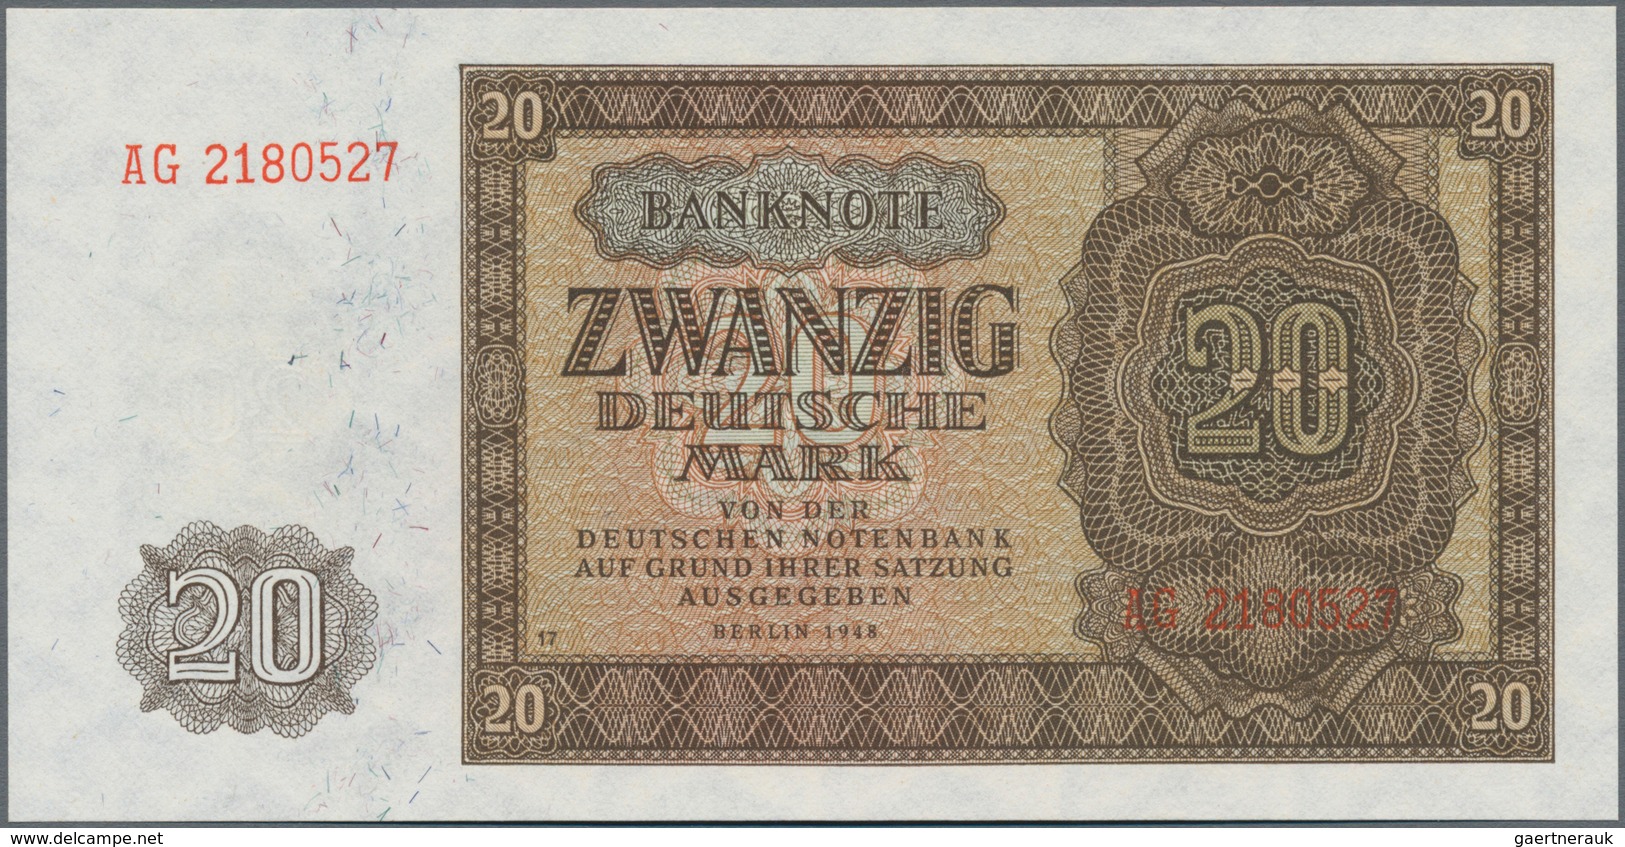 Deutschland - DDR: Deutsche Notenbank 1948 mit 5, 10, 20, 50, 100 und 1000 Mark, Ro.342-347 in kasse